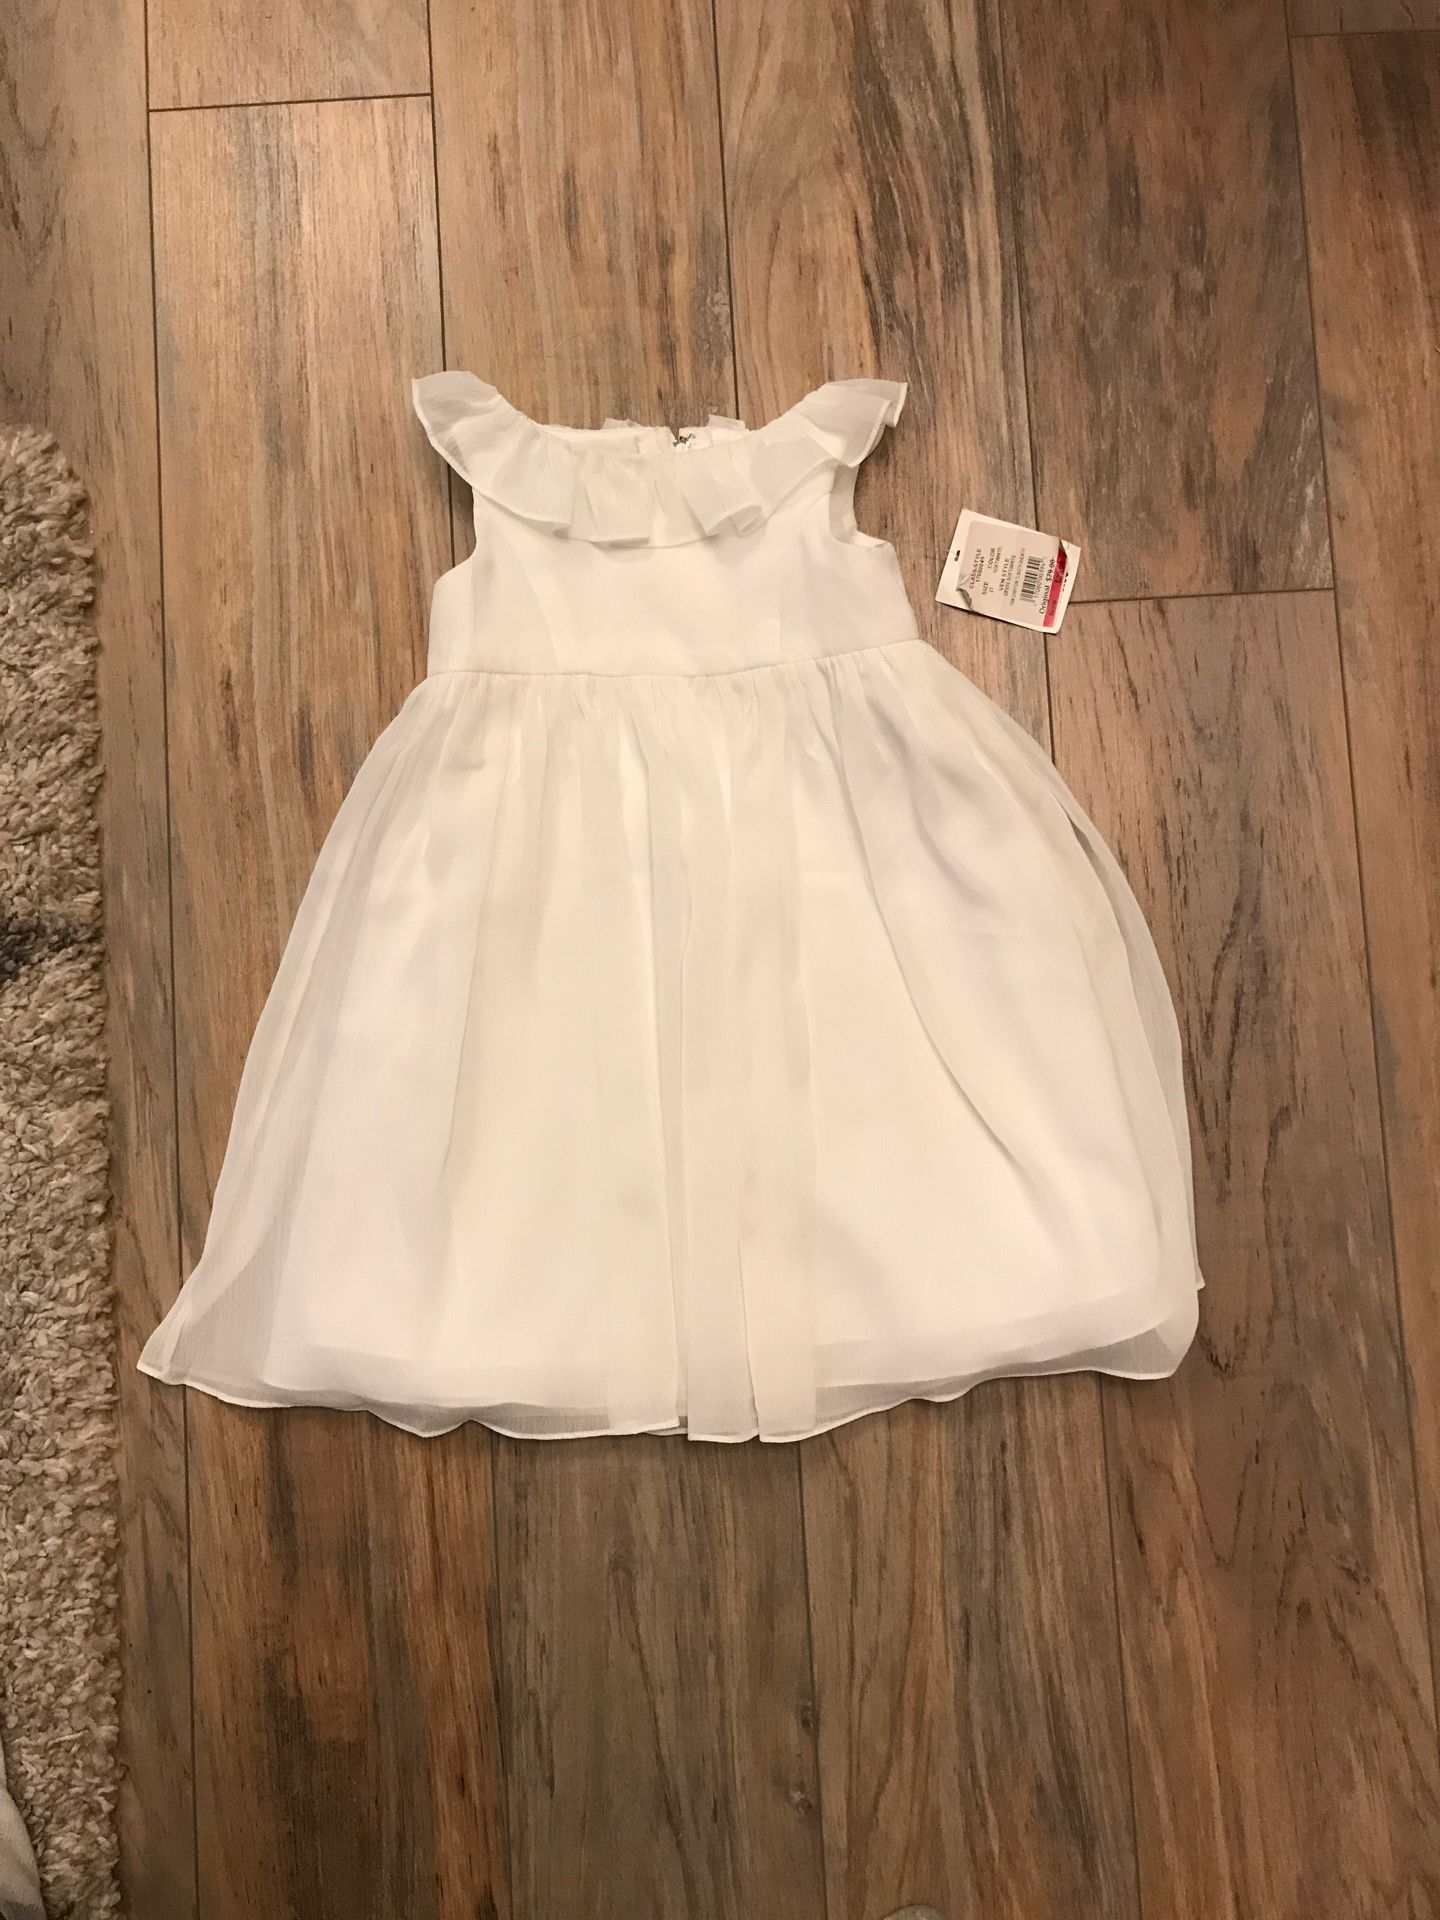 David’s Bridal 2T toddler white dress, wedding, flower girl